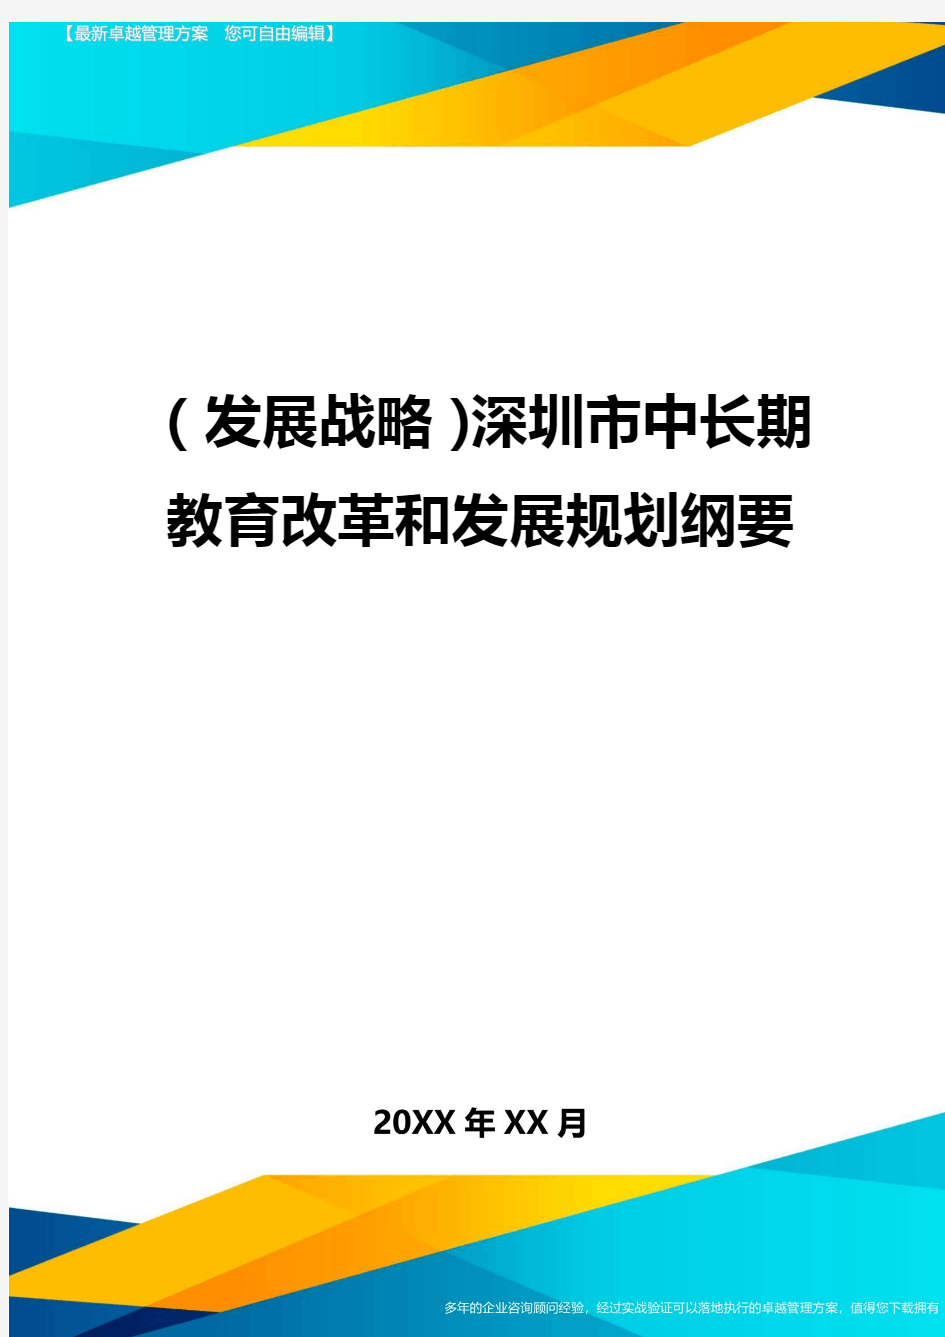 (发展战略)深圳市中长期教育改革和发展规划纲要最全版